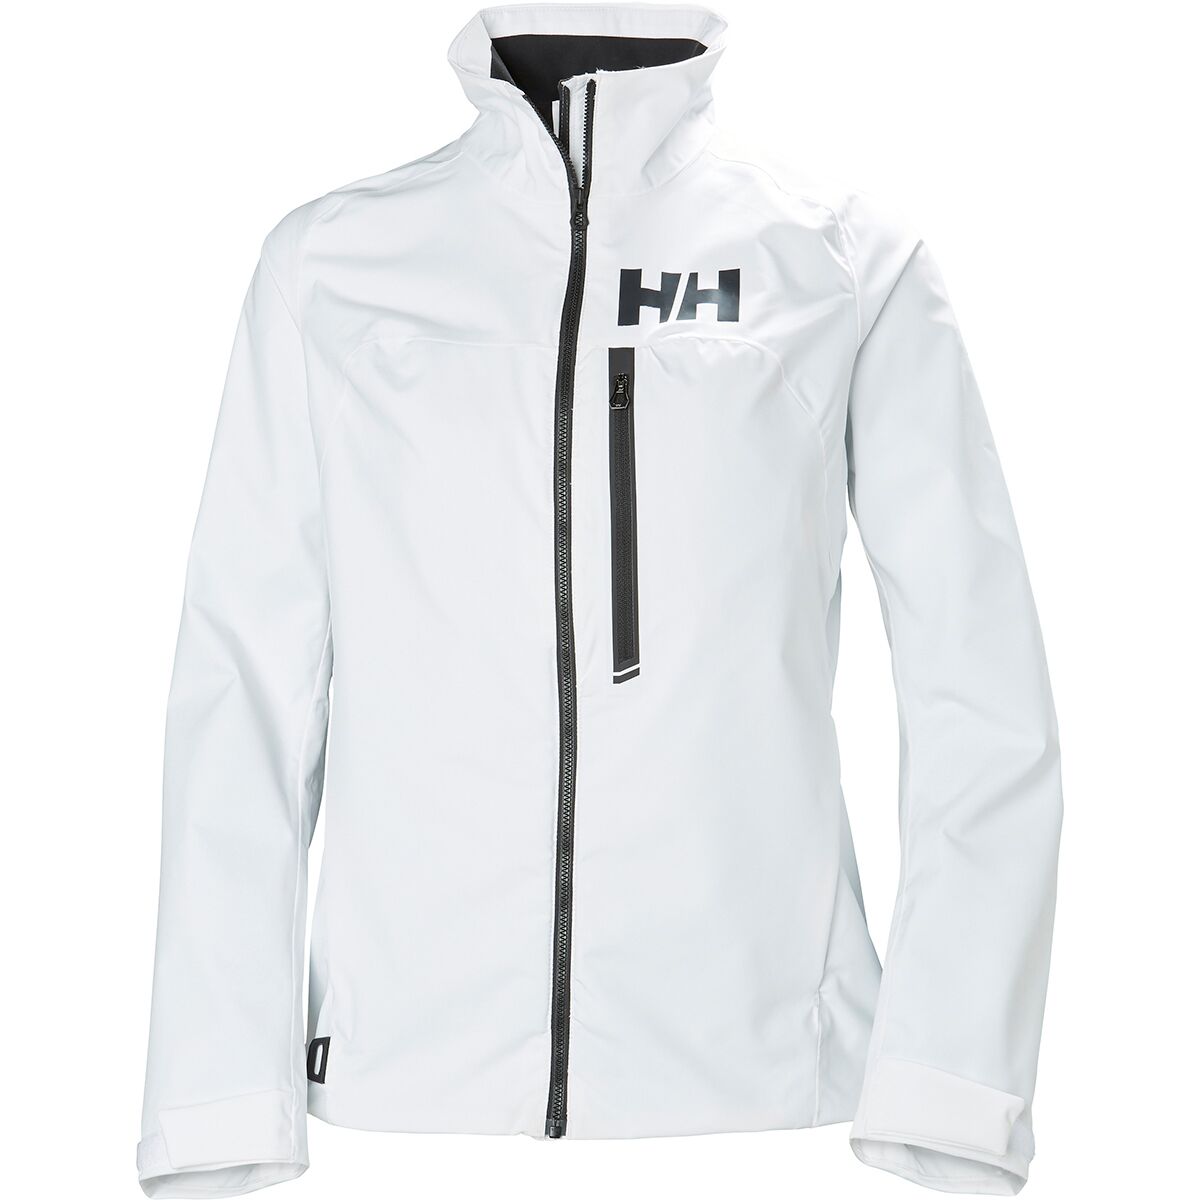 Helly Hansen HP Racing Jacket - Women's